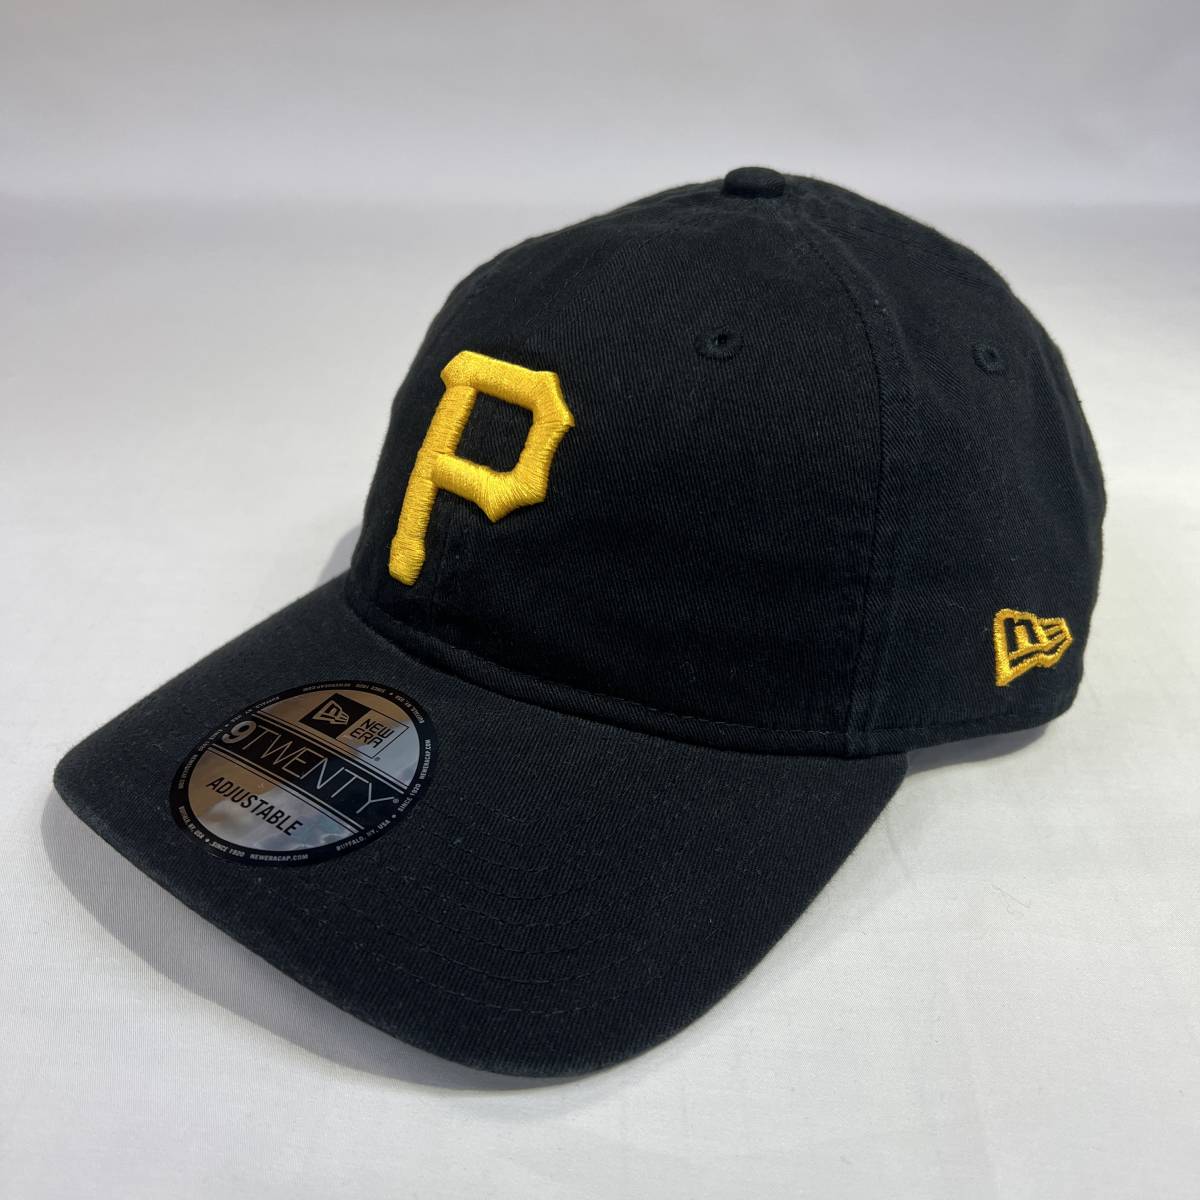 【新品】NEW ERA MLB 9TWENTY ピッツバーグ パイレーツ ブラック ニューエラ Pittsburgh Pirates Black CAP ベースボール キャップ 帽子の画像1